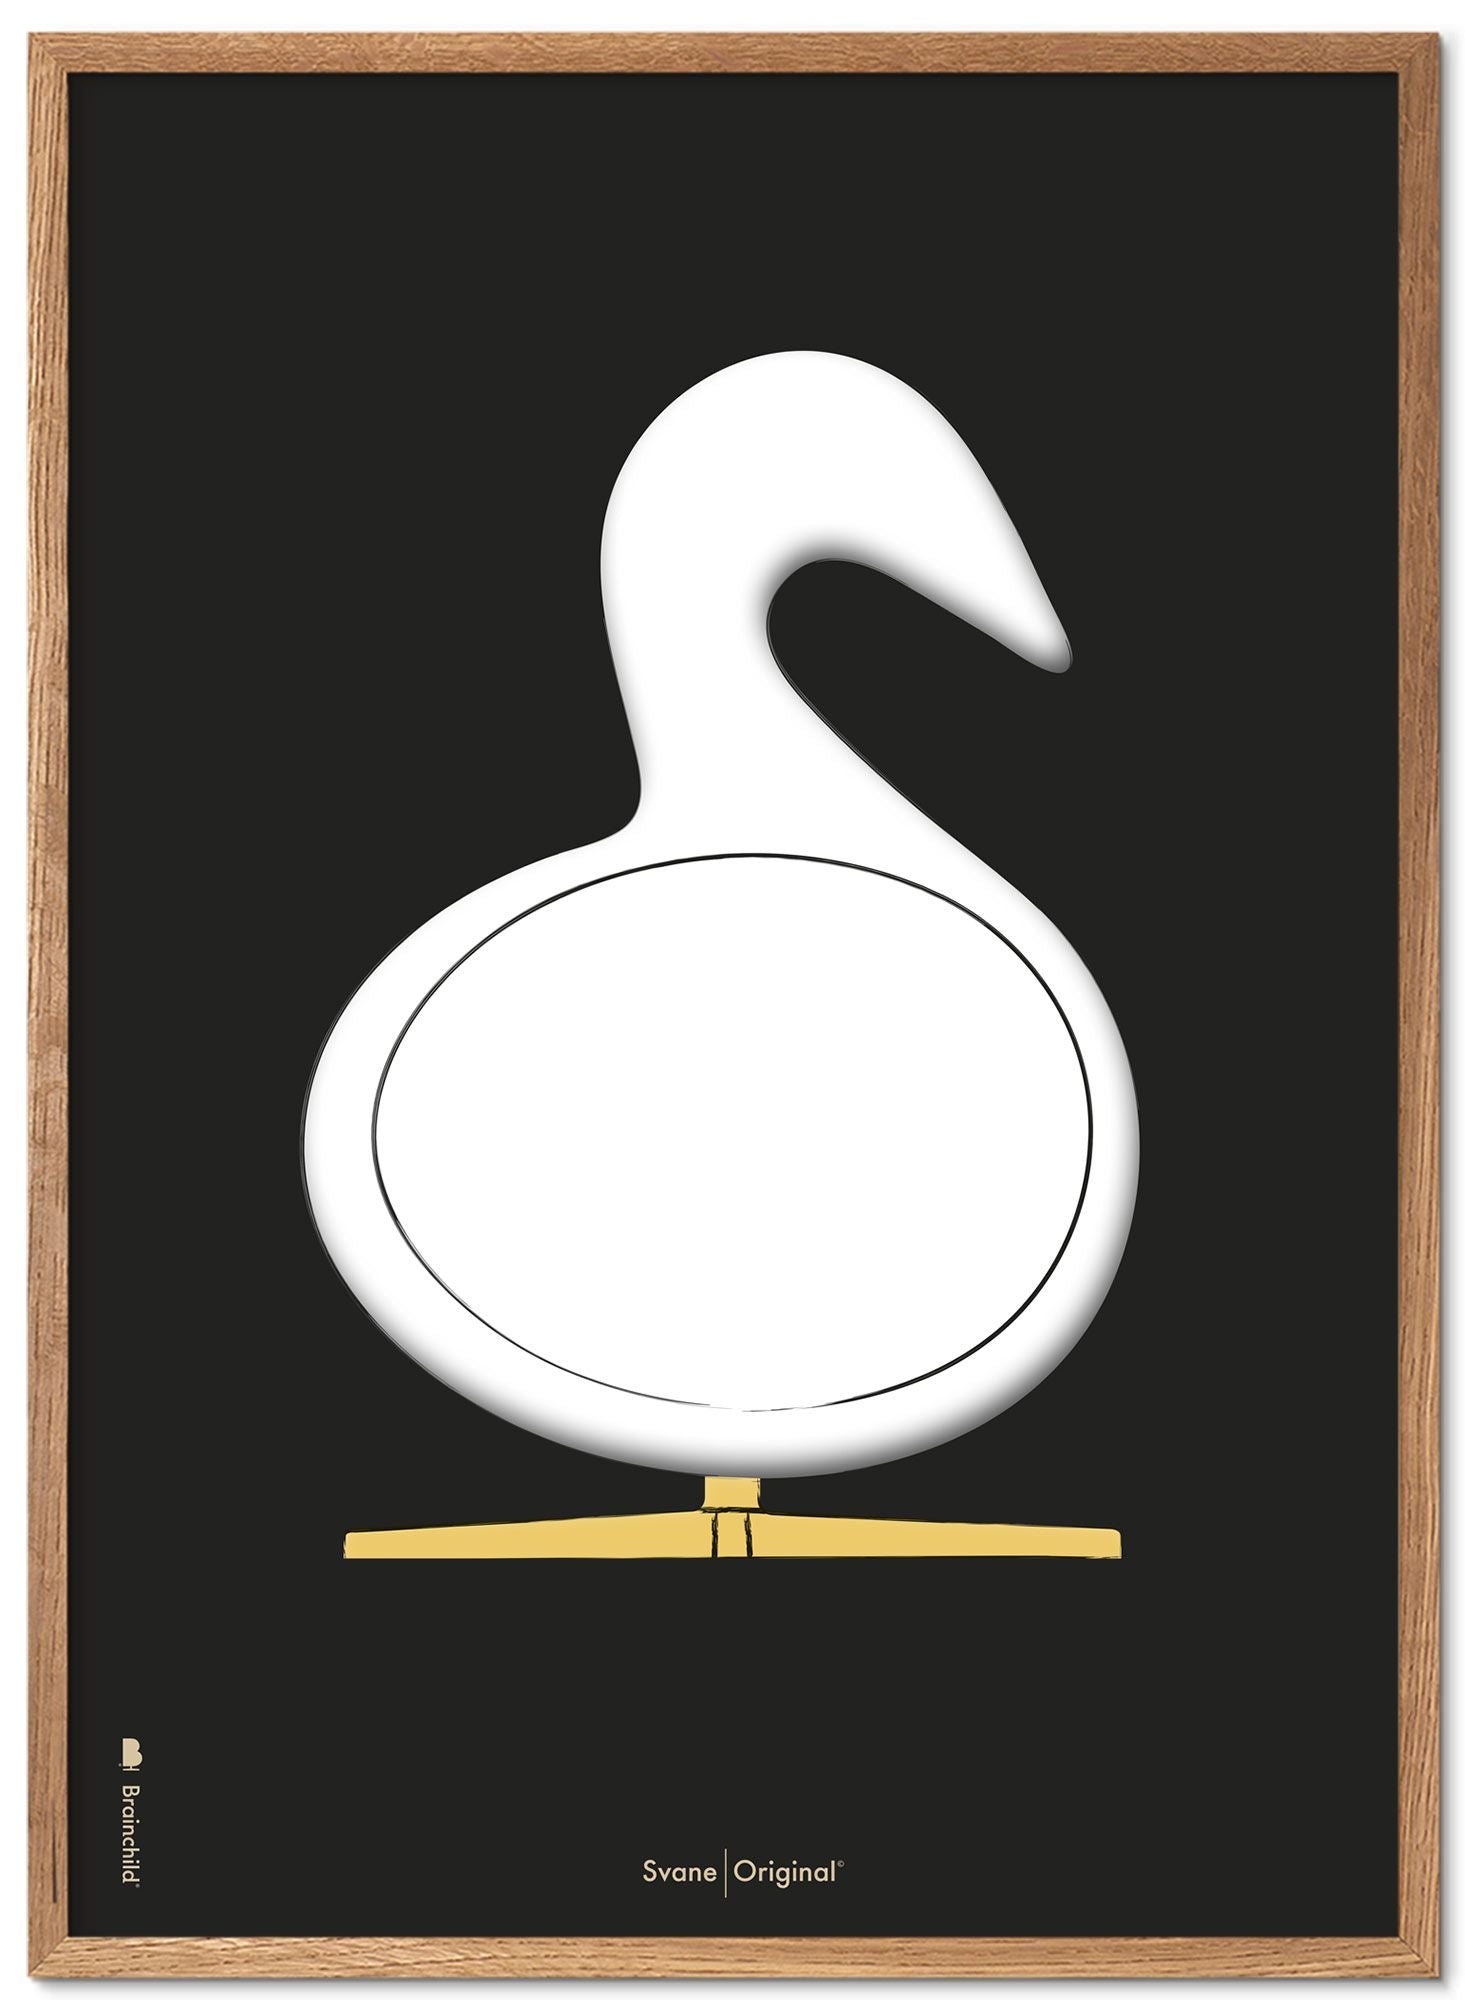 Marco de póster de boceto de diseño de Swan. Hecho de madera clara 70x100 cm, fondo negro